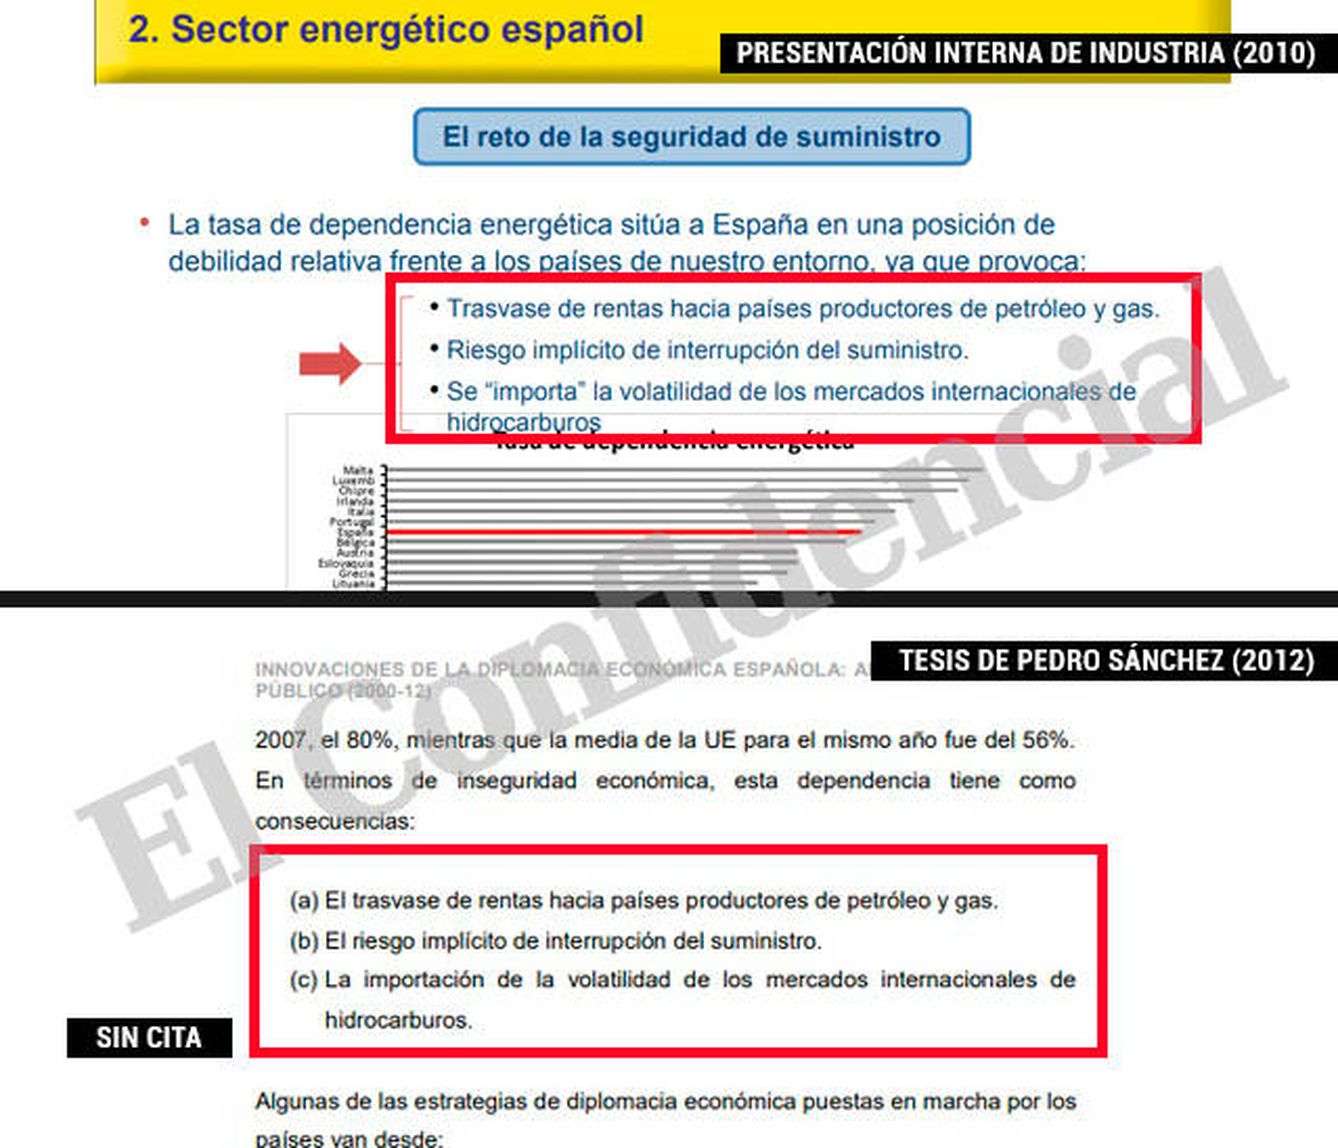 Pedro Sánchez copia sin citar los tres problemas que acarrea la dependencia energética a España.